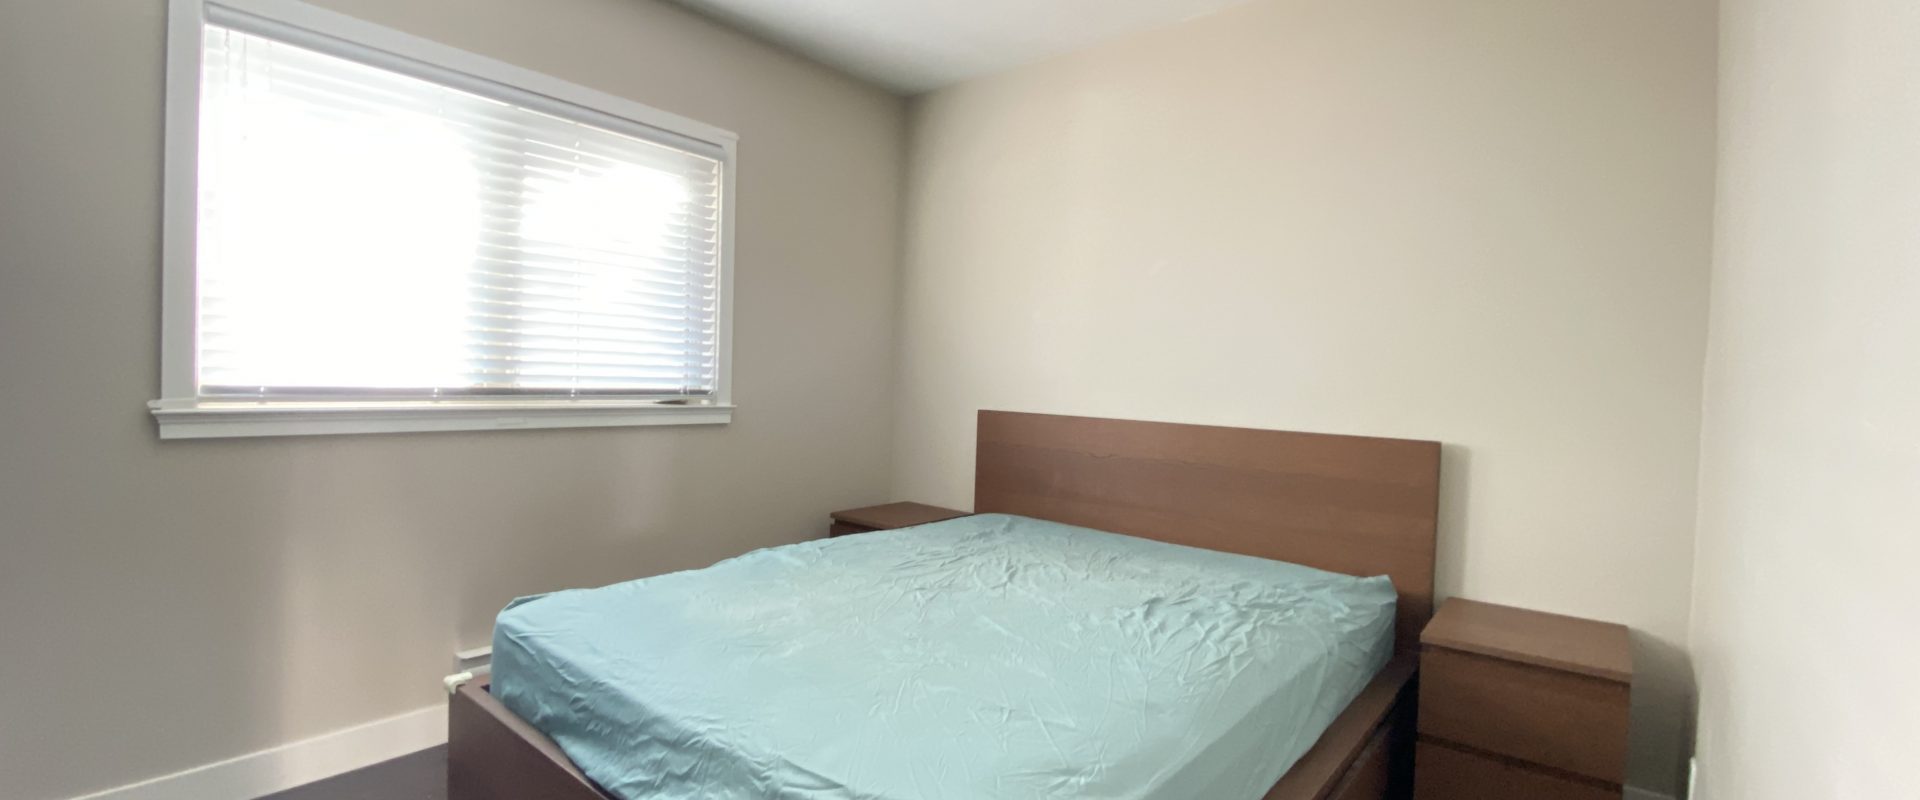 Vancouver Renfrew Collingwood Upper Level 2 Bedroom plus Den for Rent